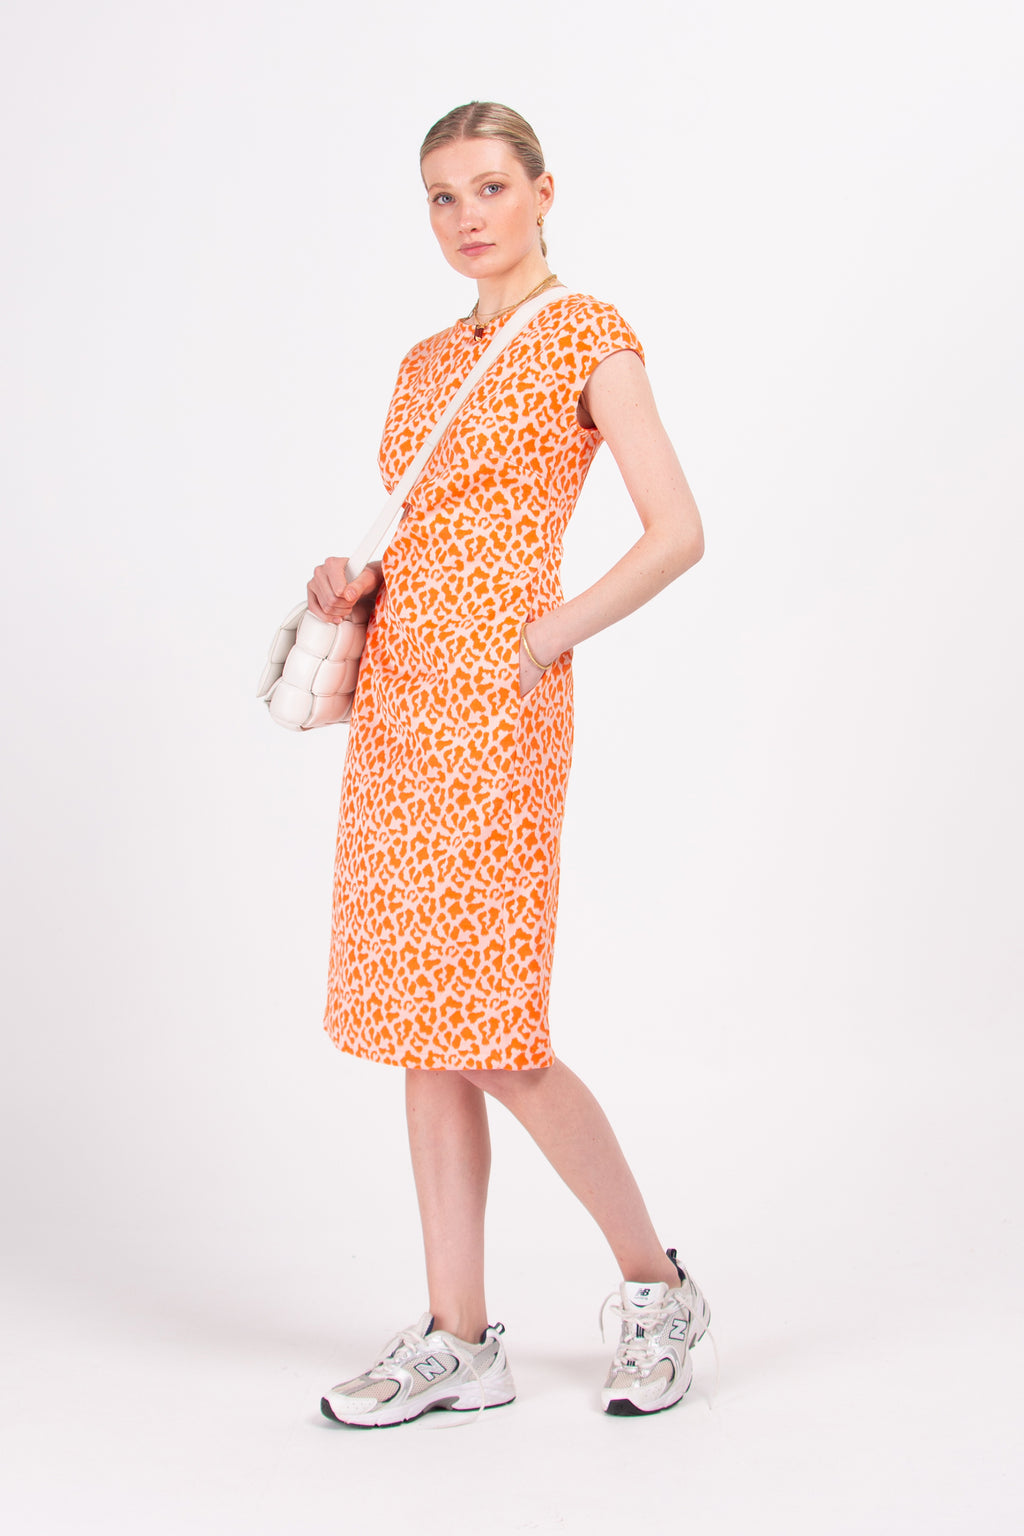 Danira dress in mandarine leopard